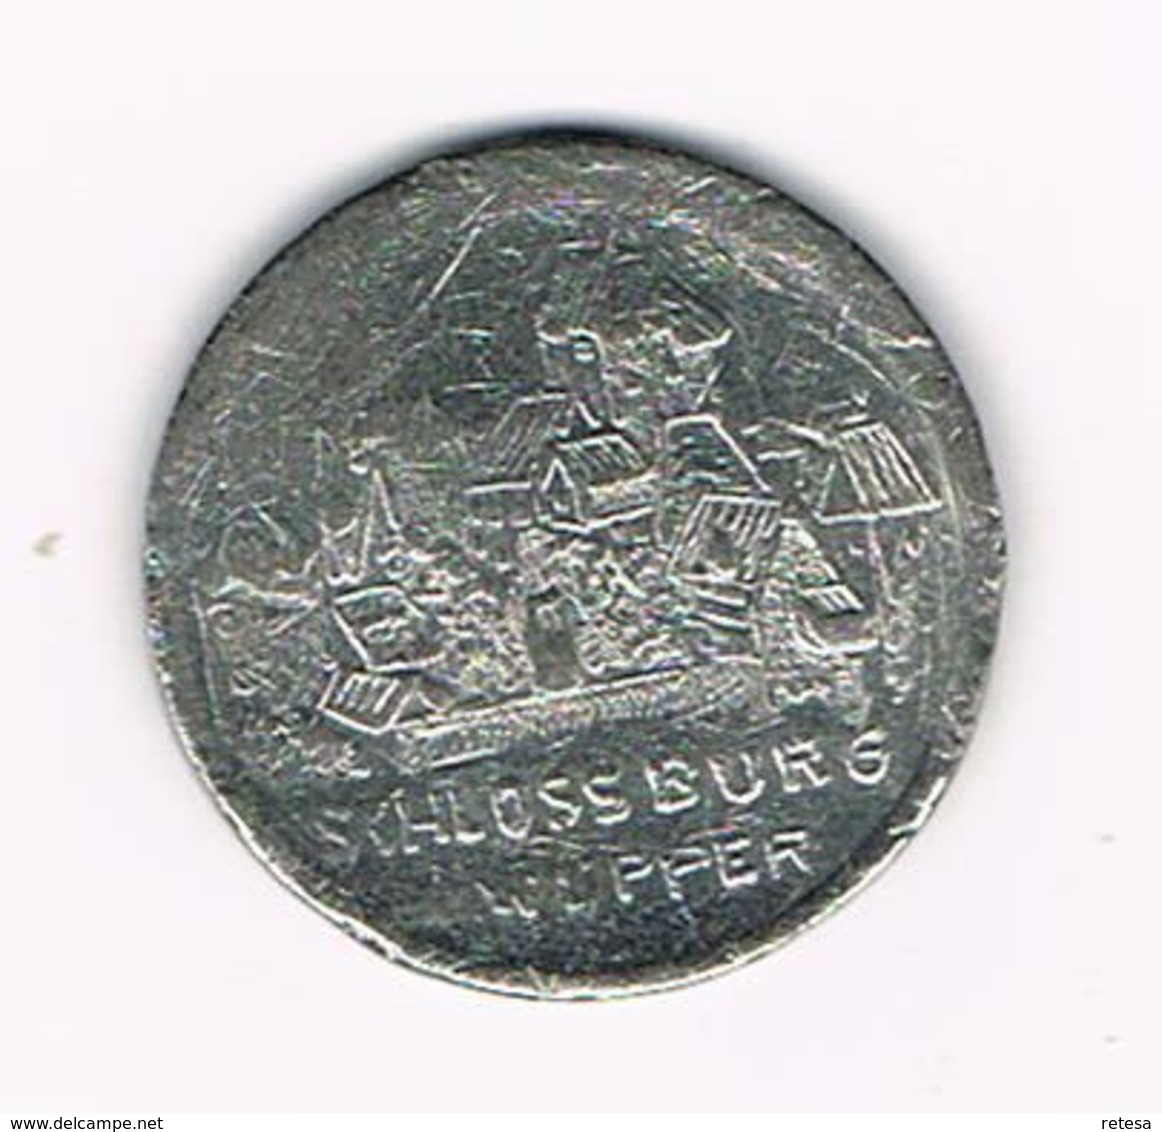 //  PENNING  ENGELBERT II - SCHLOSSBURG A.d. WUPPER - Elongated Coins